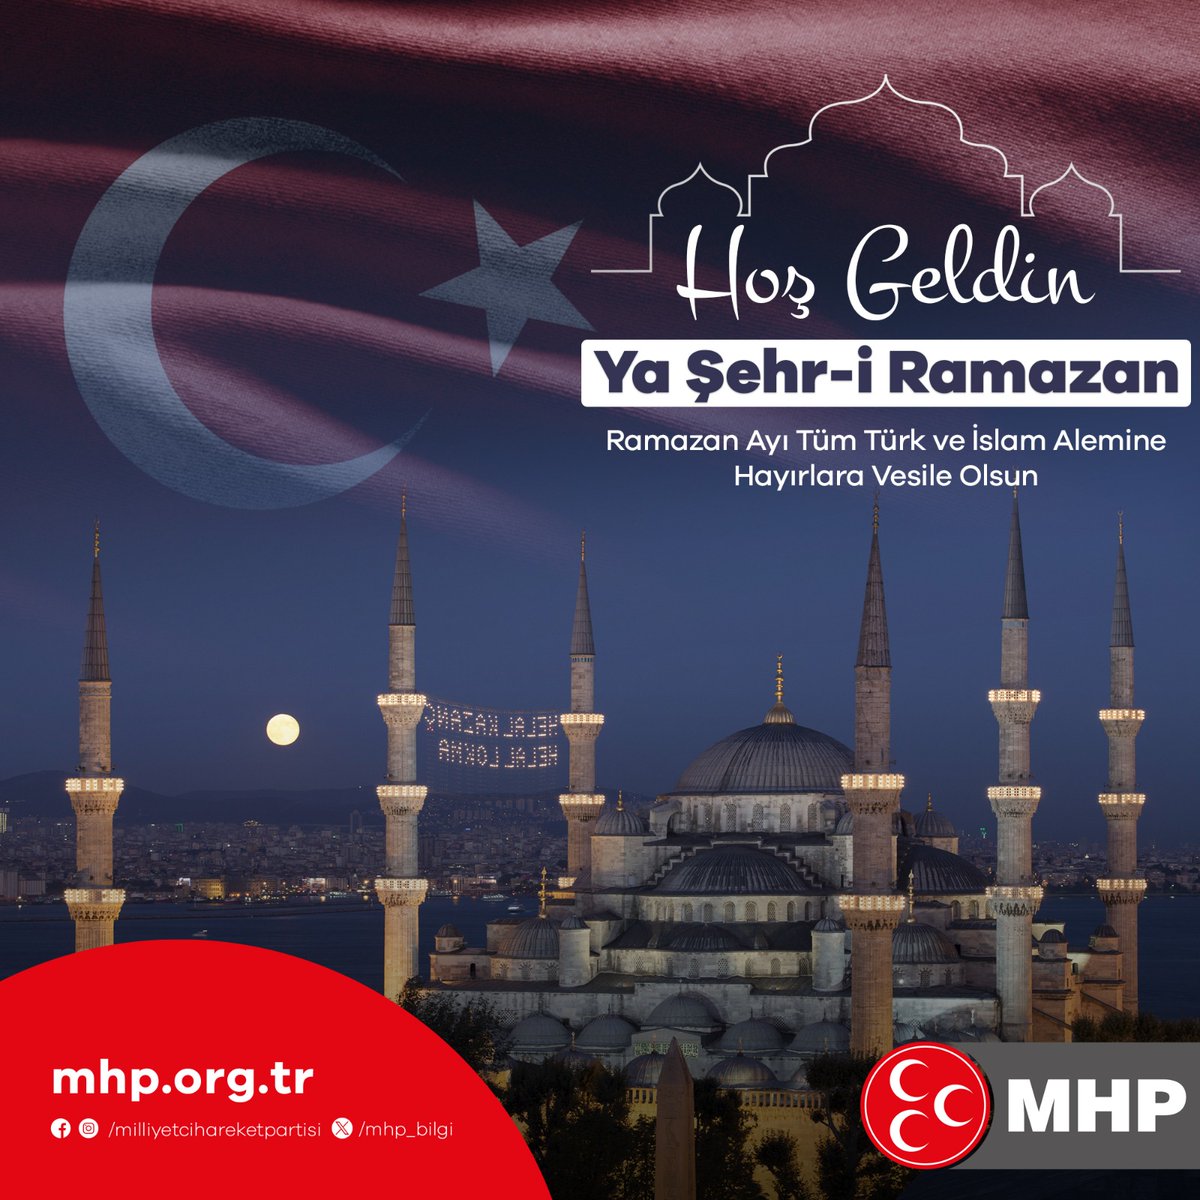 Hoş Geldin Ya Şehr-i Ramazan Ramazan Ayı Tüm Türk ve İslam Alemine Hayırlara Vesile Olsun